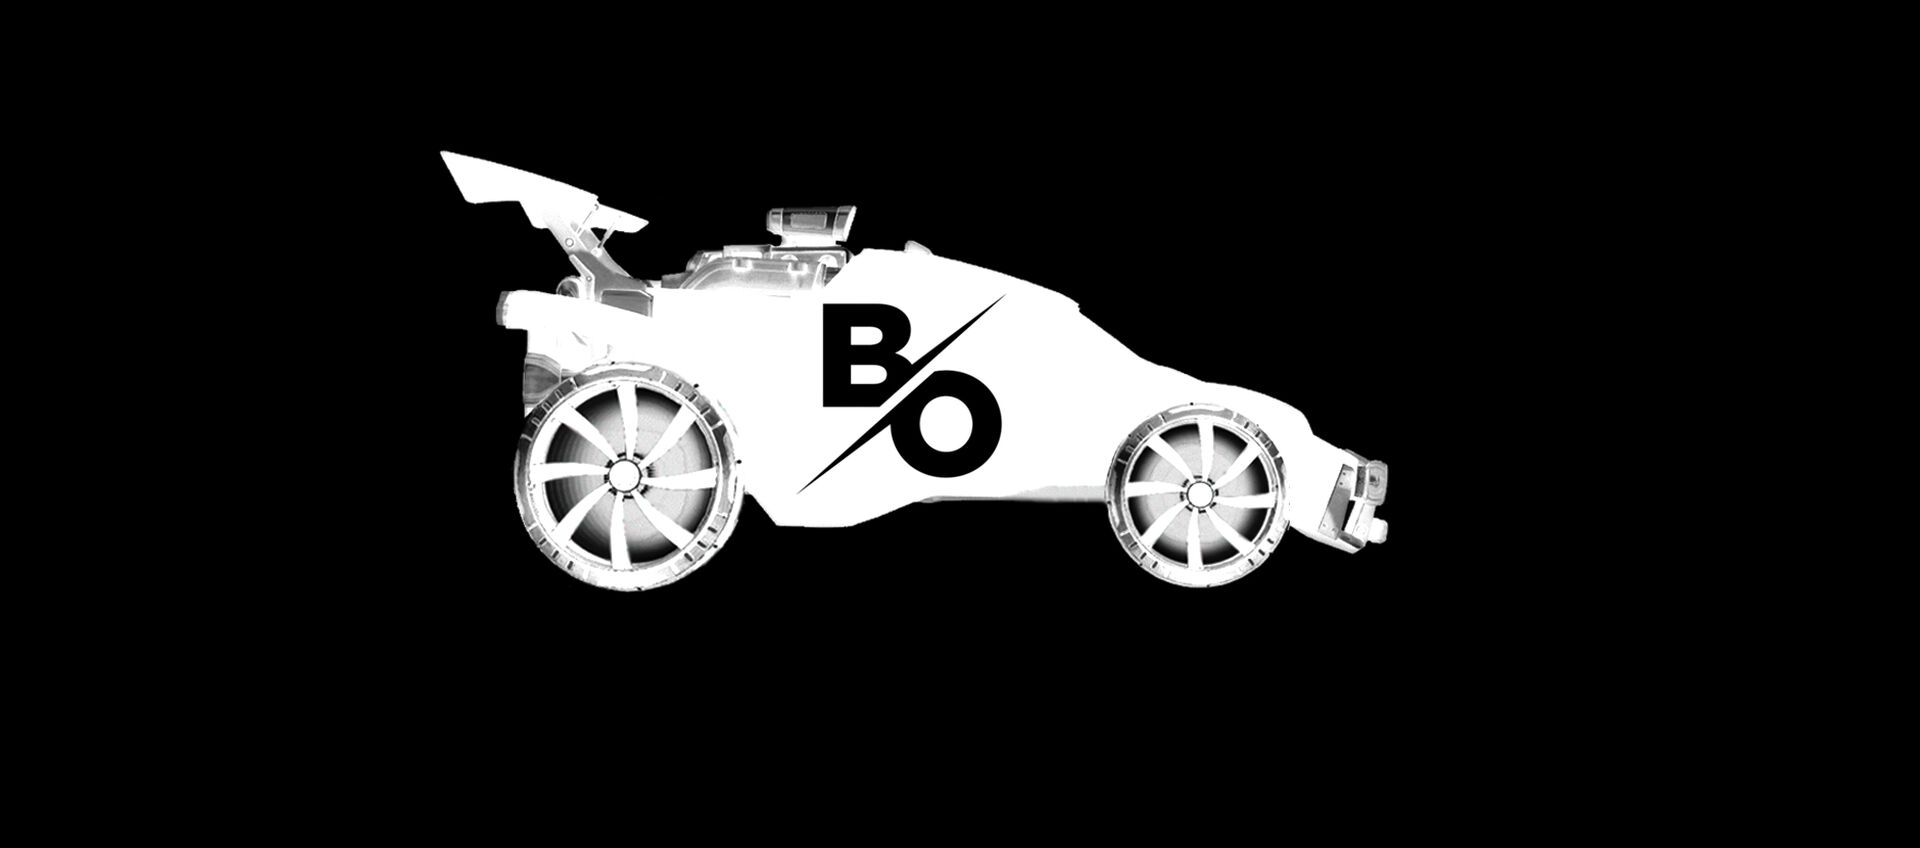 Bio009's header